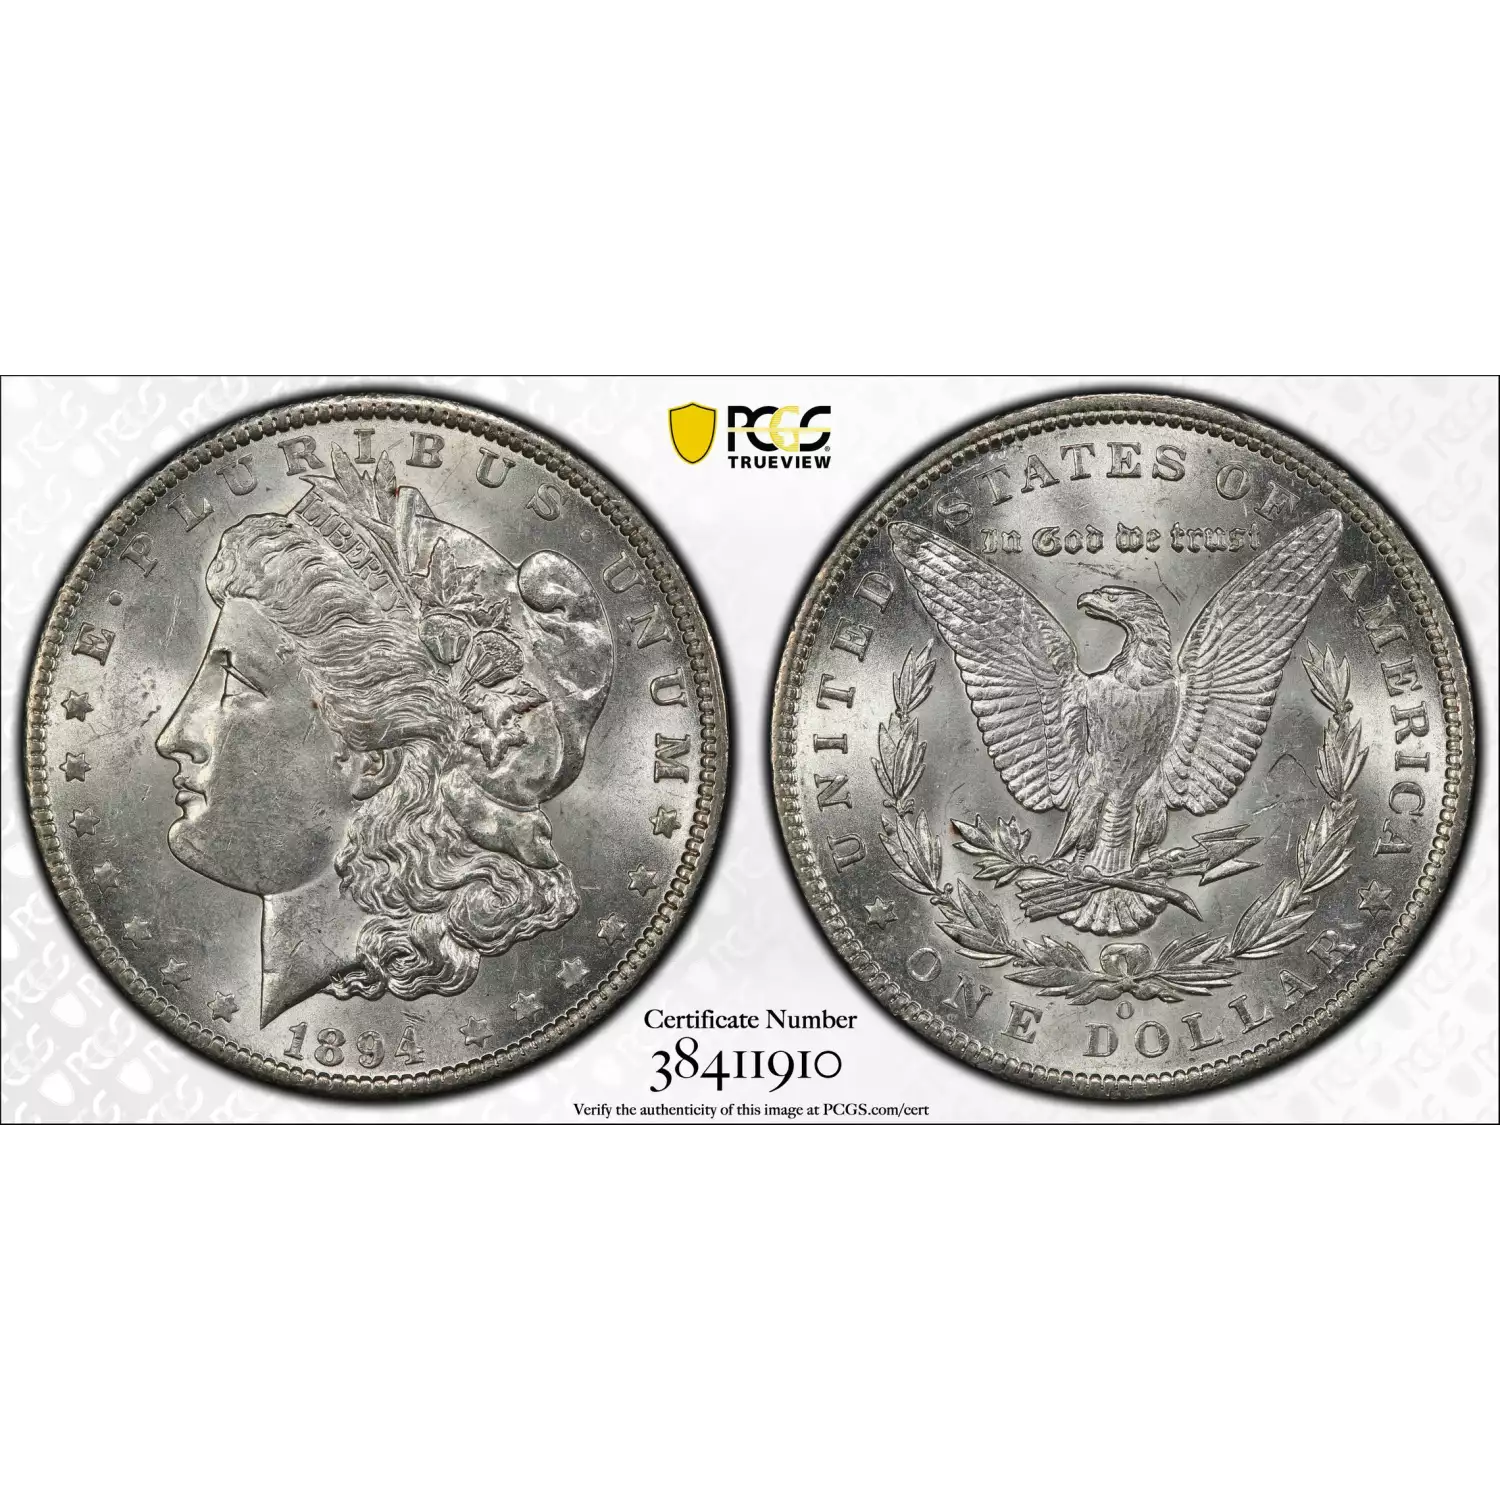 1894-O $1